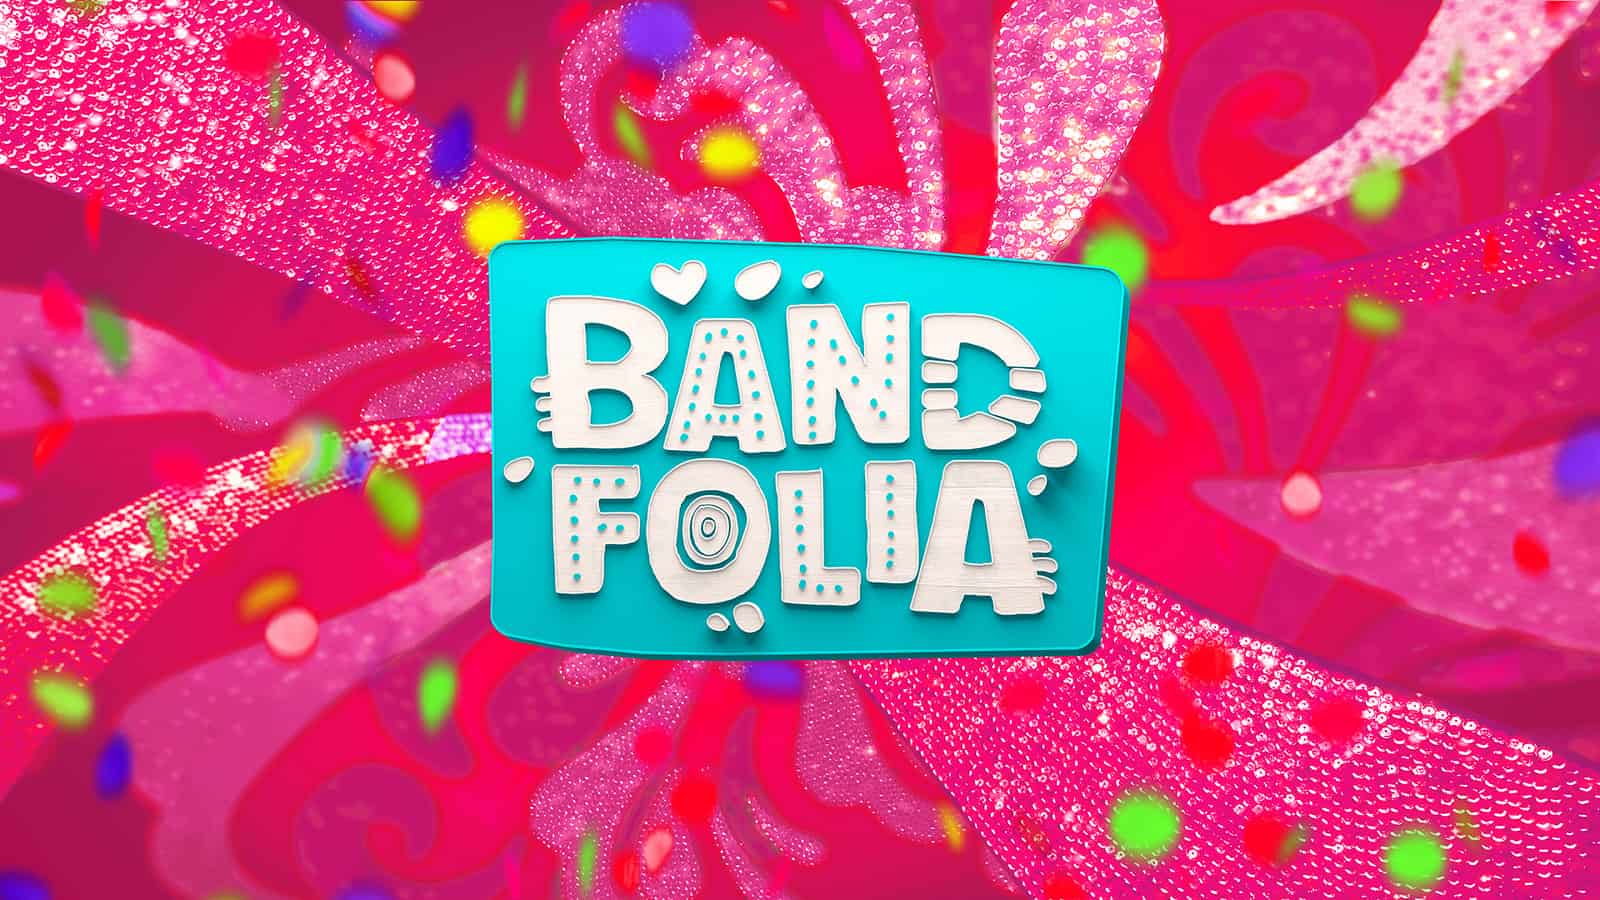 Band Folia amplia cobertura, convoca Patricia Maldonado e põe Erick Jacquin no samba